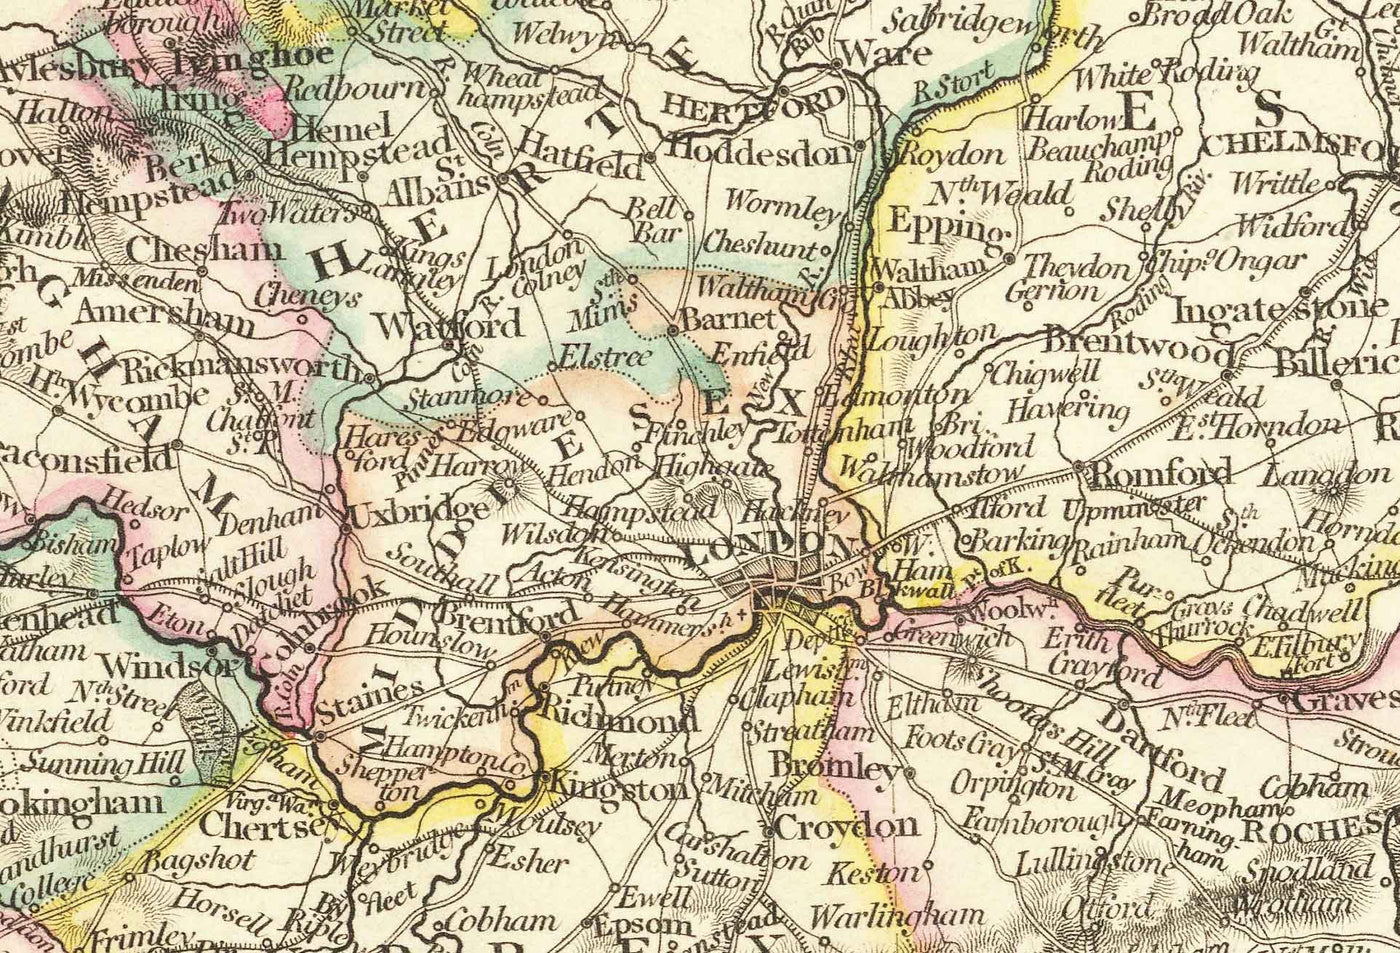 Antiguo mapa de Inglaterra y Gales en 1832 por John Arrowsmith - Ciudades, condados, carreteras, ferrocarril